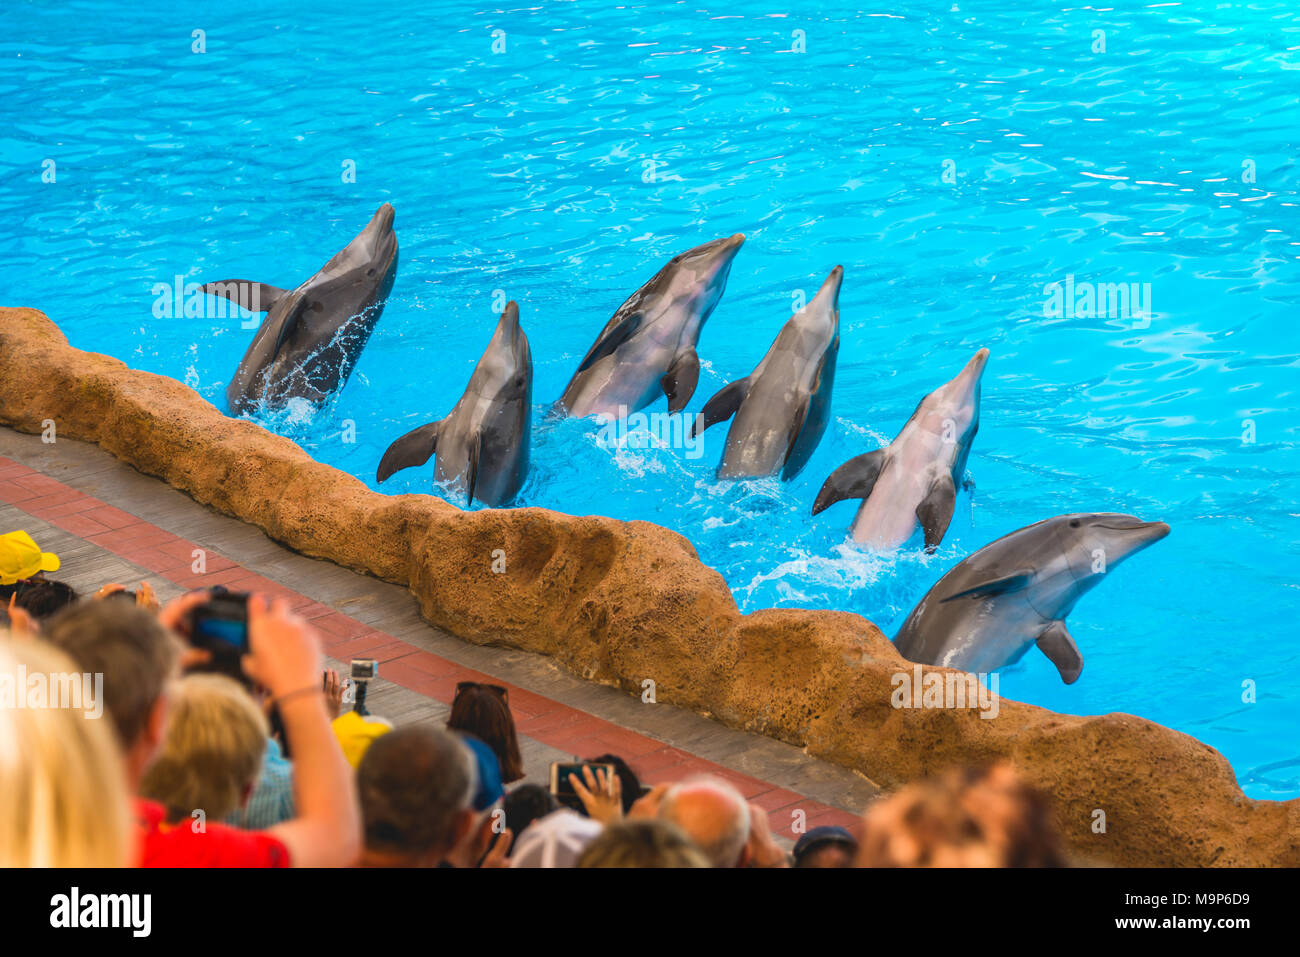 Les grands dauphins (Tursiops truncatus) Spectacle de dauphins, delphinarium, Loro Parque, Puerto de la Cruz, Tenerife, Canaries, Espagne Banque D'Images